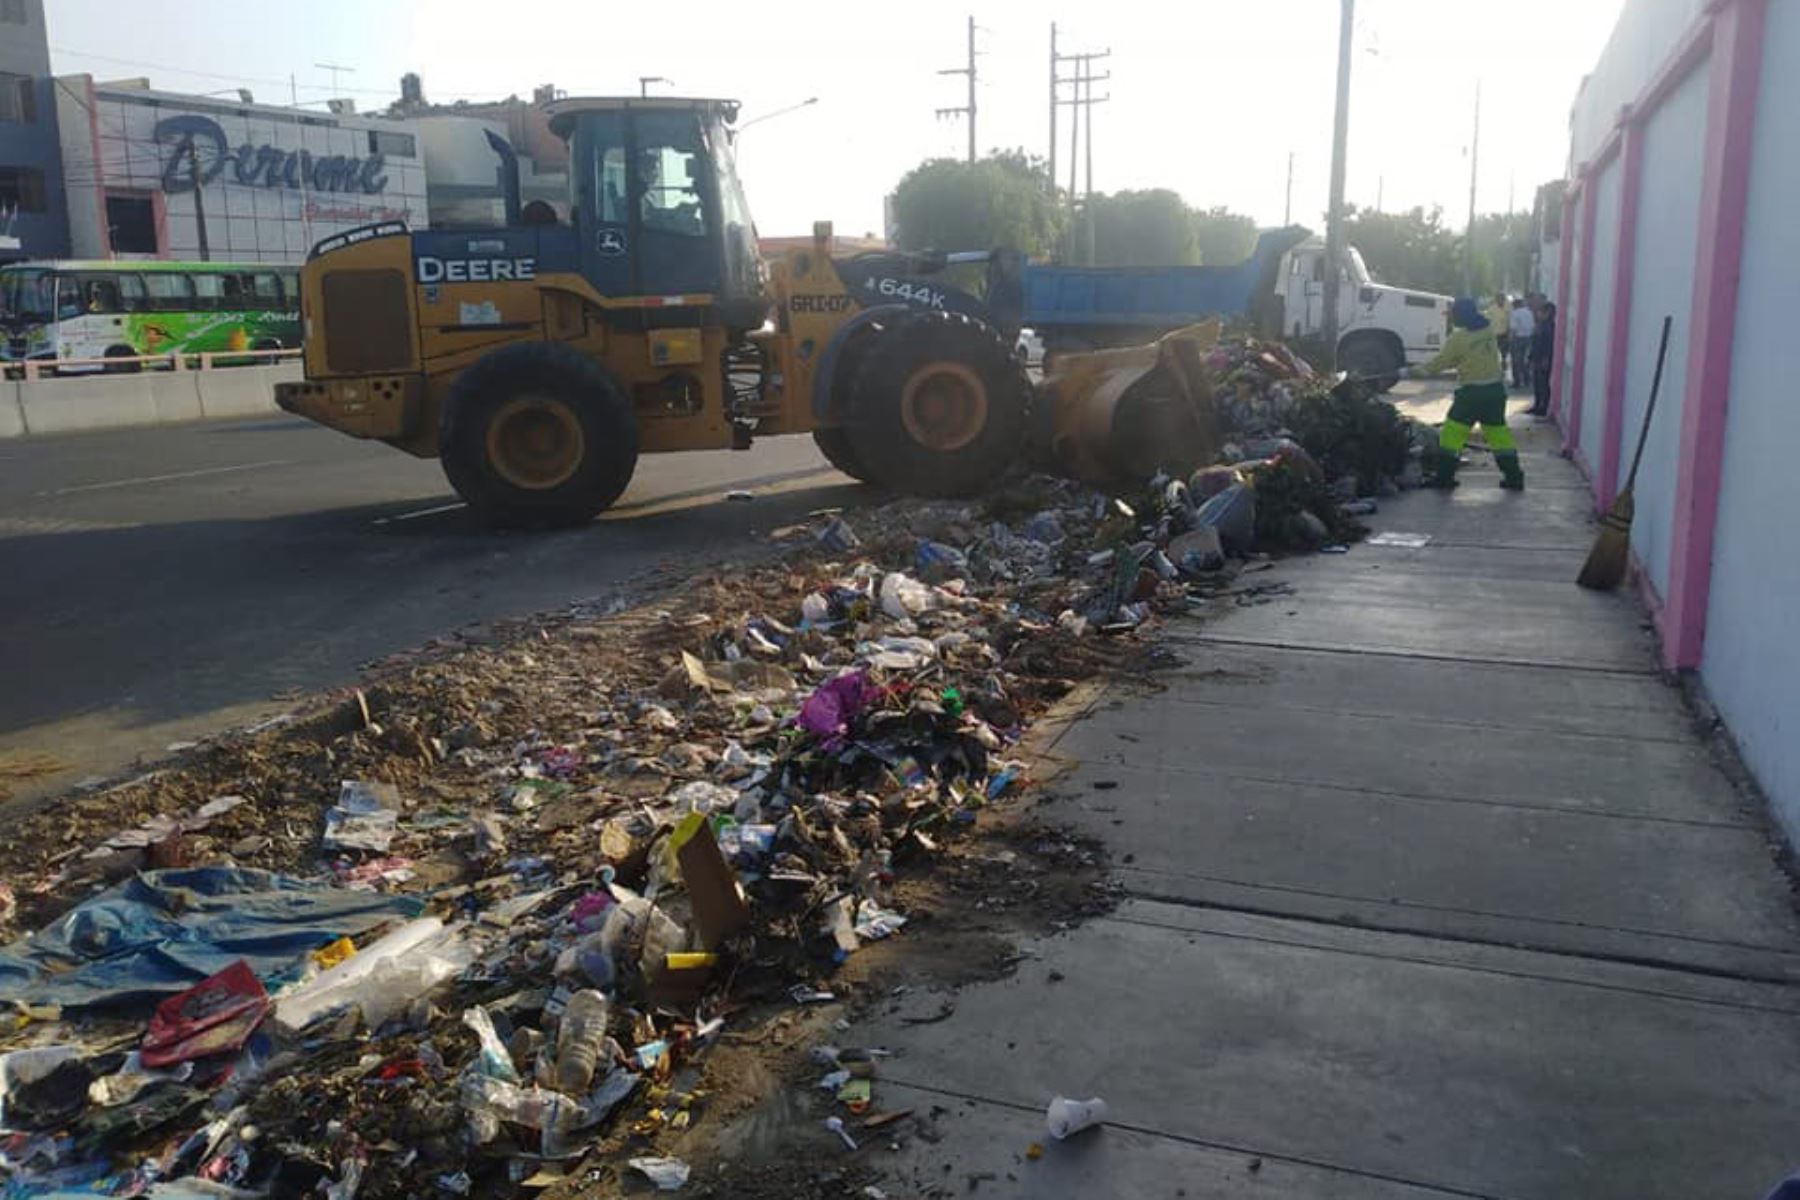 Municipalidad Provincial de Trujillo proyecta recolectar los 20,000 metros cúbicos de residuos sólidos acumulados a fines de este mes. Foto: Luis Puell